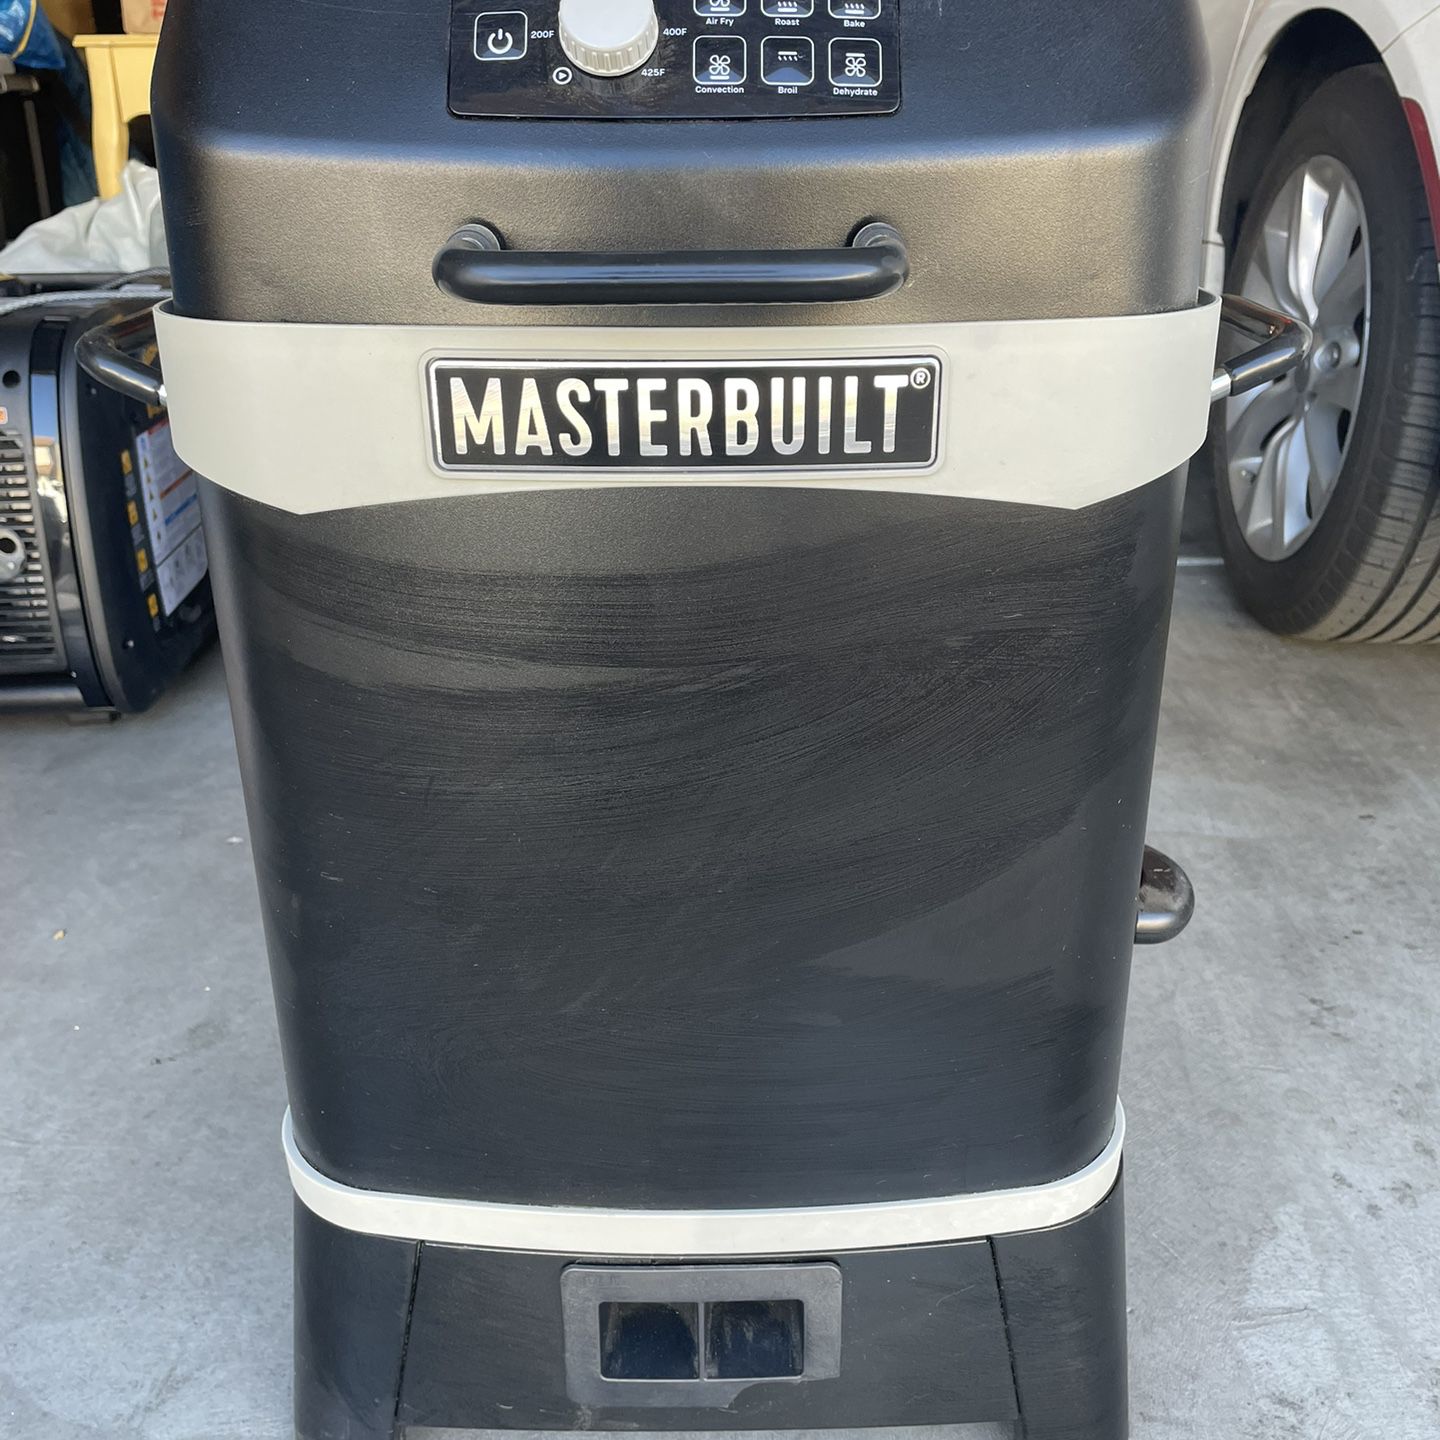 Masterbuilt Outdoor Air Fryer for Sale in Enterprise, NV - OfferUp